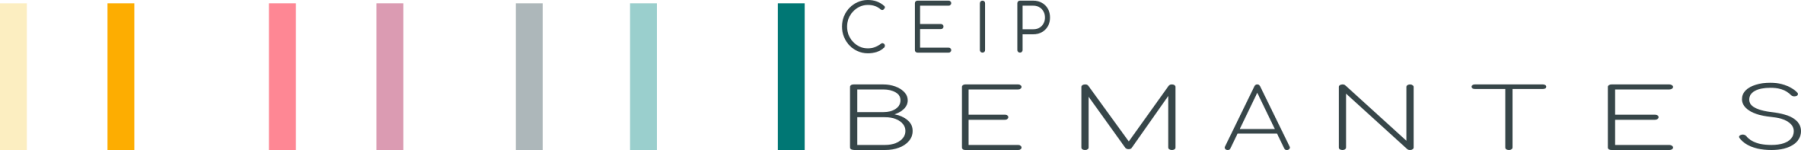 Logotipo de Aula Virtual: CEIP de Bemantes